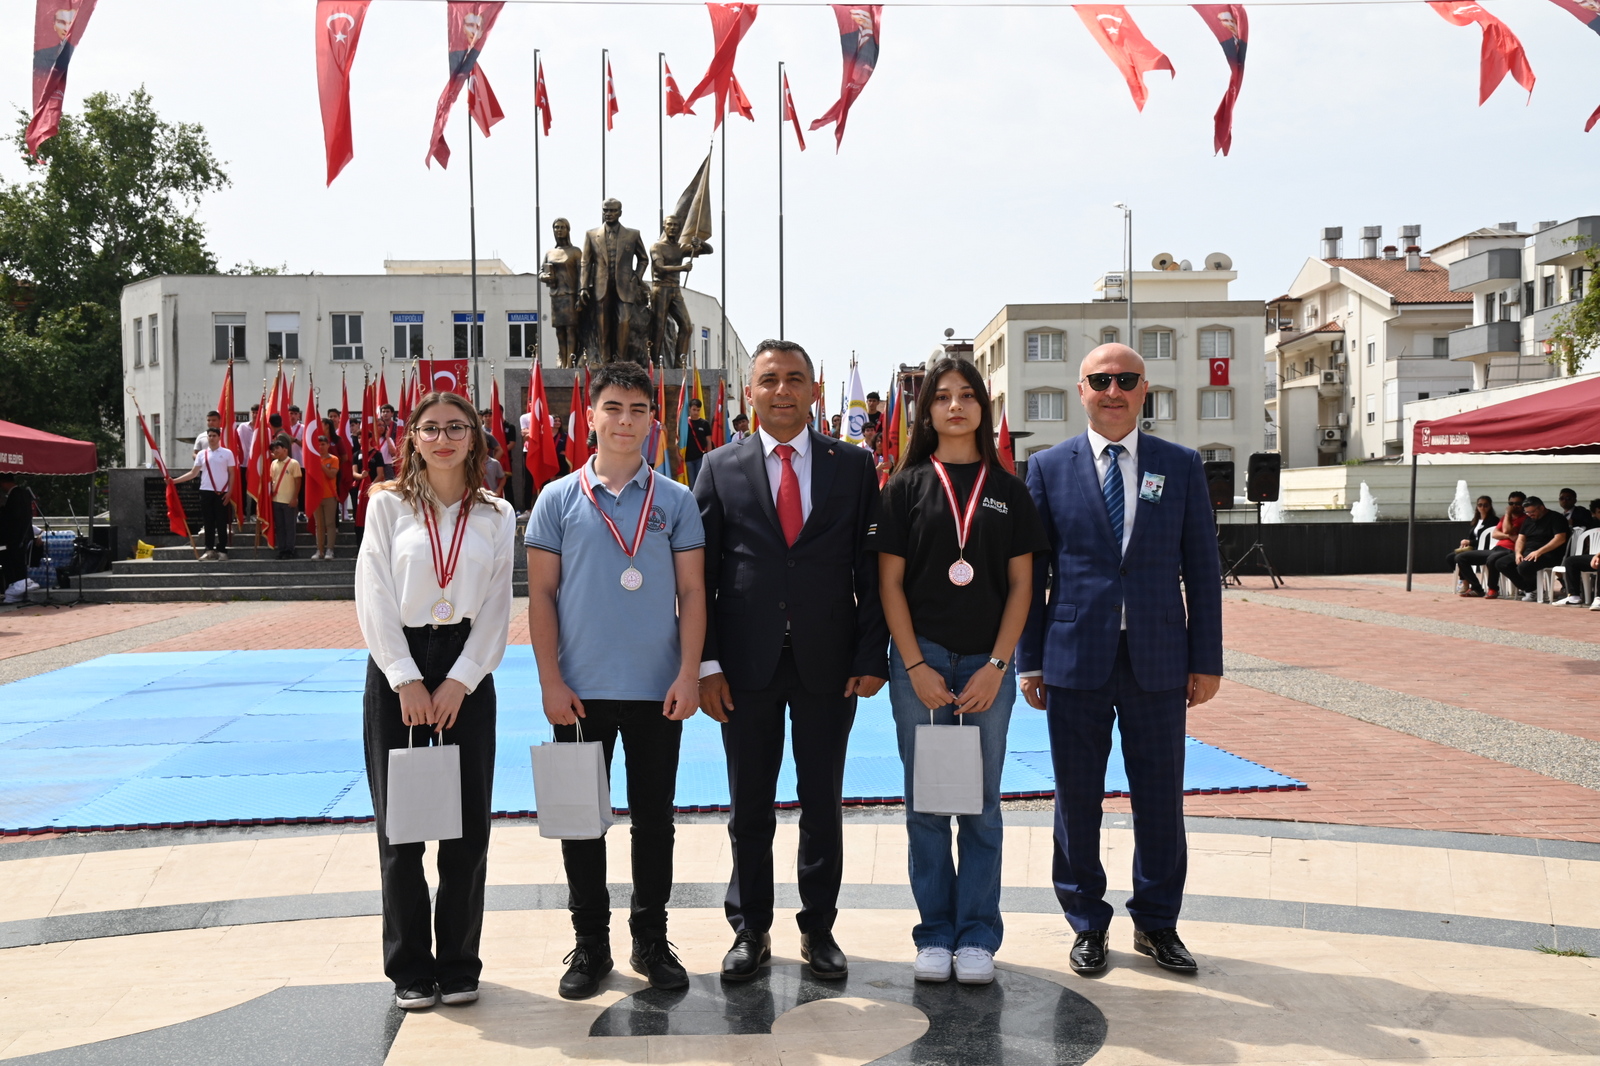 19 Mayıs Atatürk' ü Anma Gençlik ve Spor Bayramı 105'inci yılında Manavgat’ta coşkuyla kutlandı